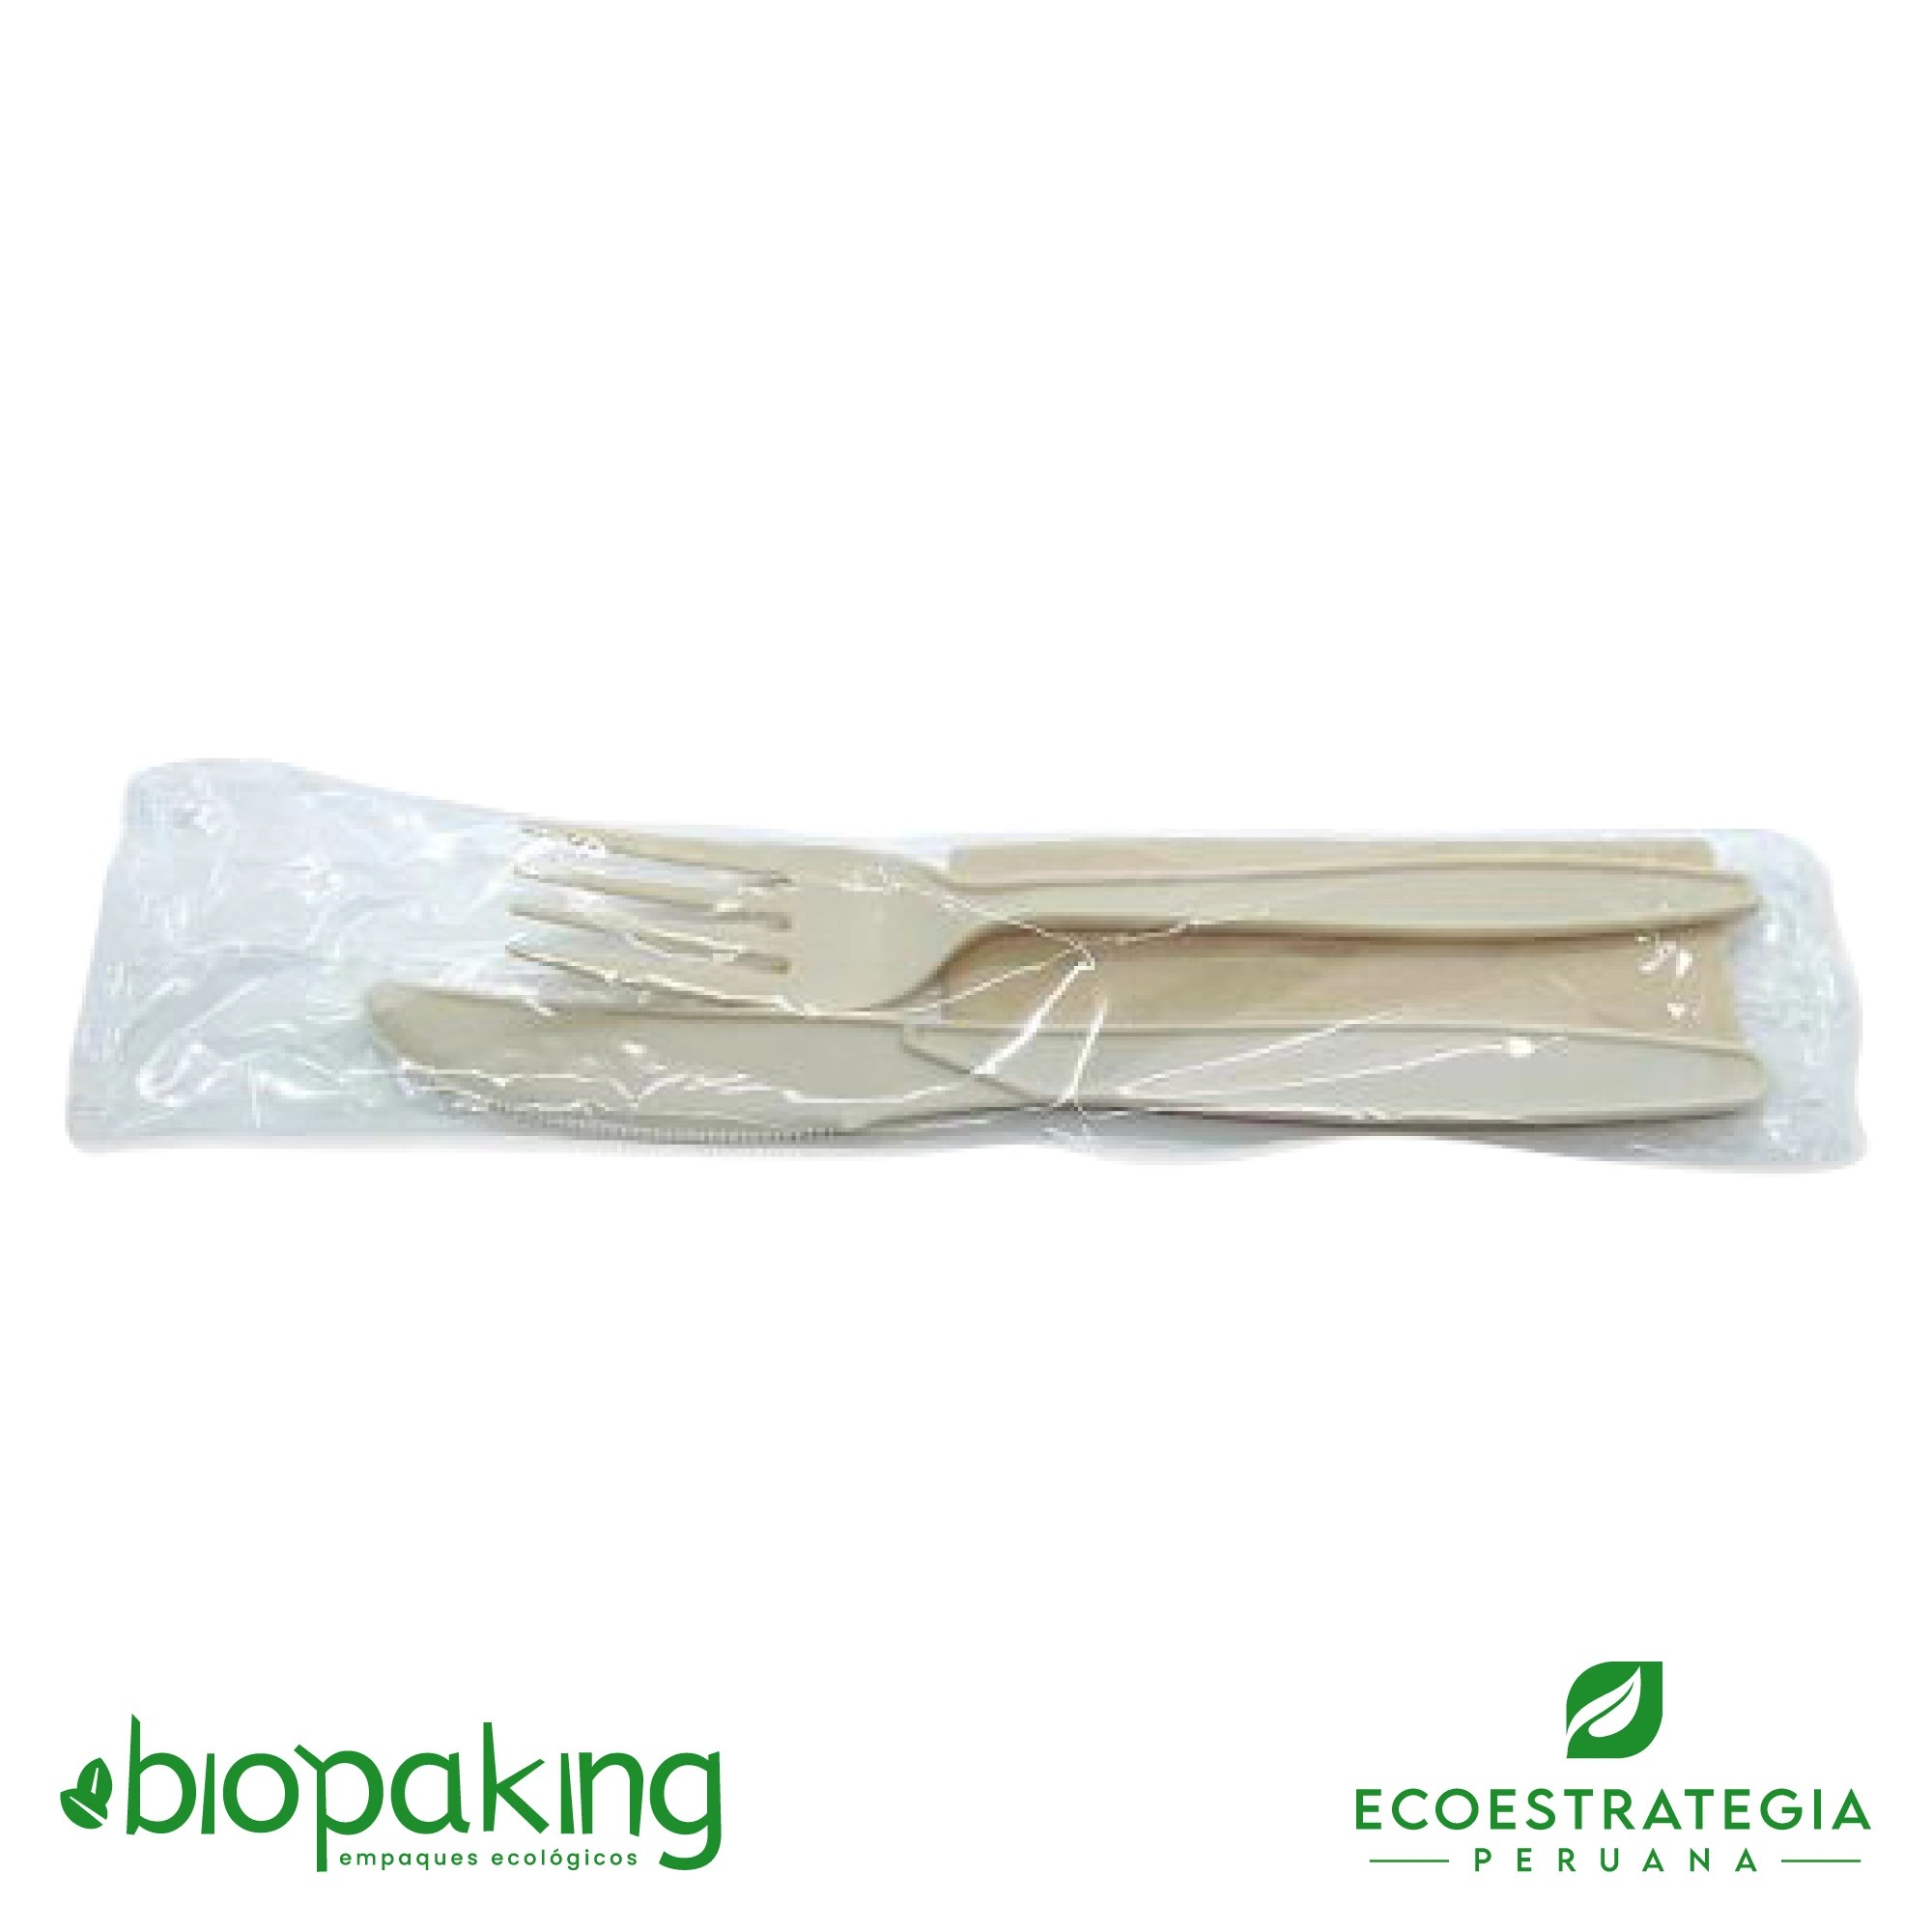 Este tenedor y cuchillo biodegradable de 15 cm esta hecho de fecula de maíz. Cubierto descartable resistente a altas temperaturas, con servilleta ecológica